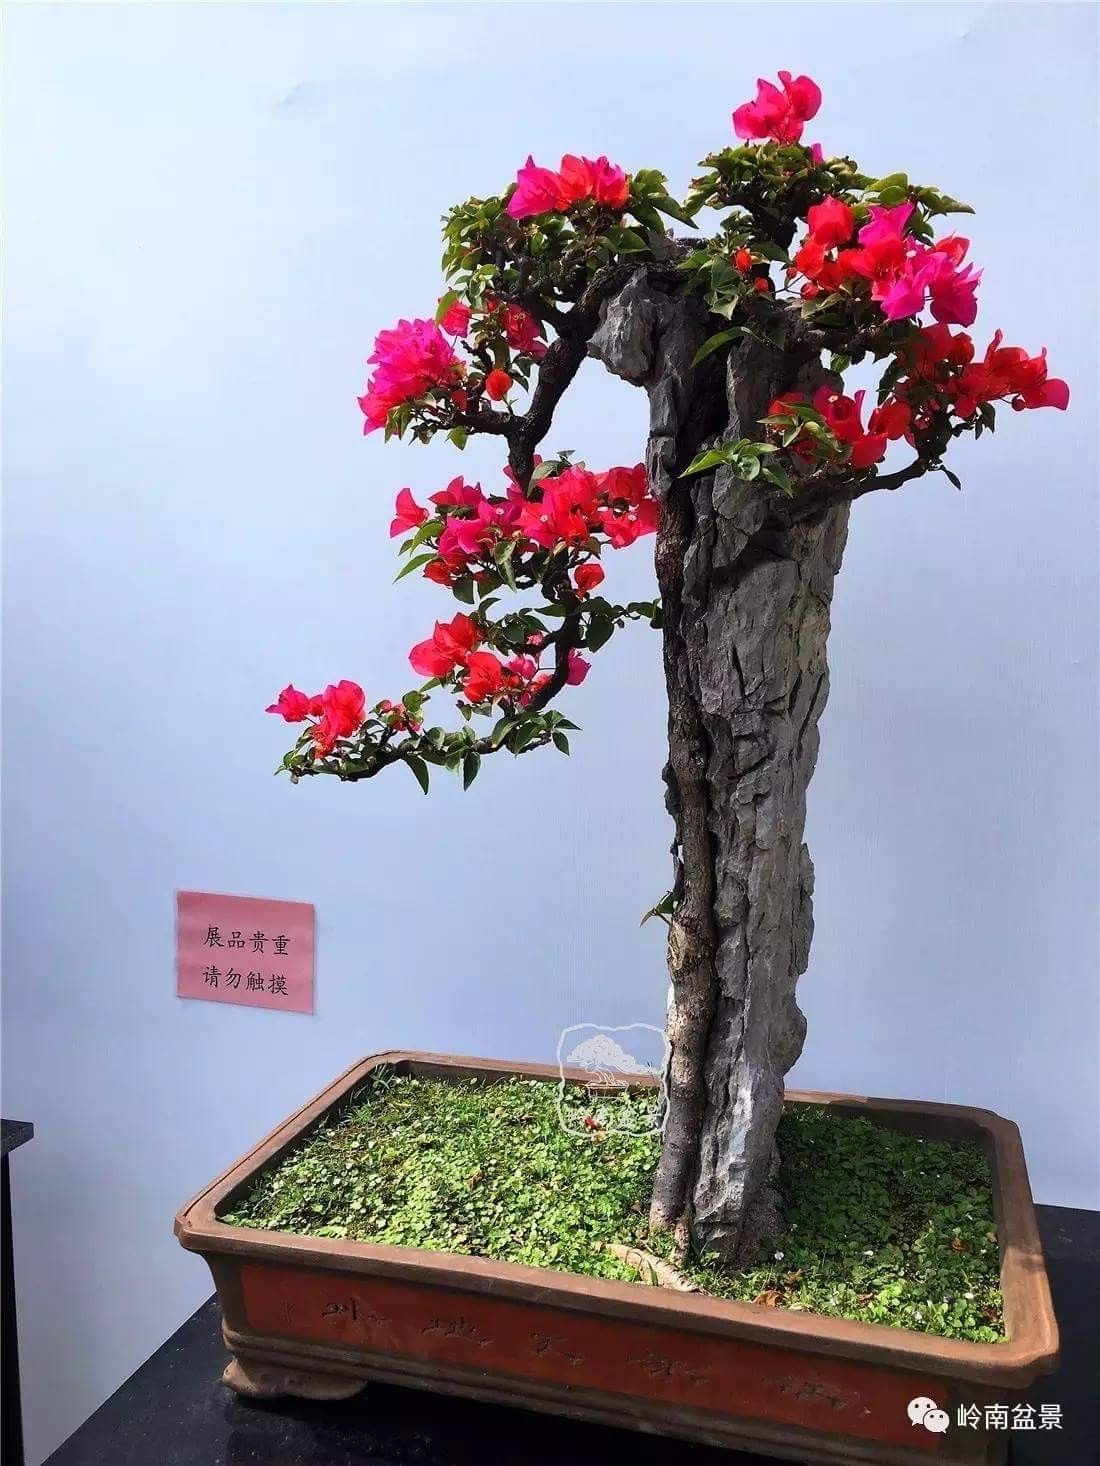 Hoa giấy leo giàn thì rực rỡ rồi, nhưng tạo thế bonsai vừa đẹp vừa ...